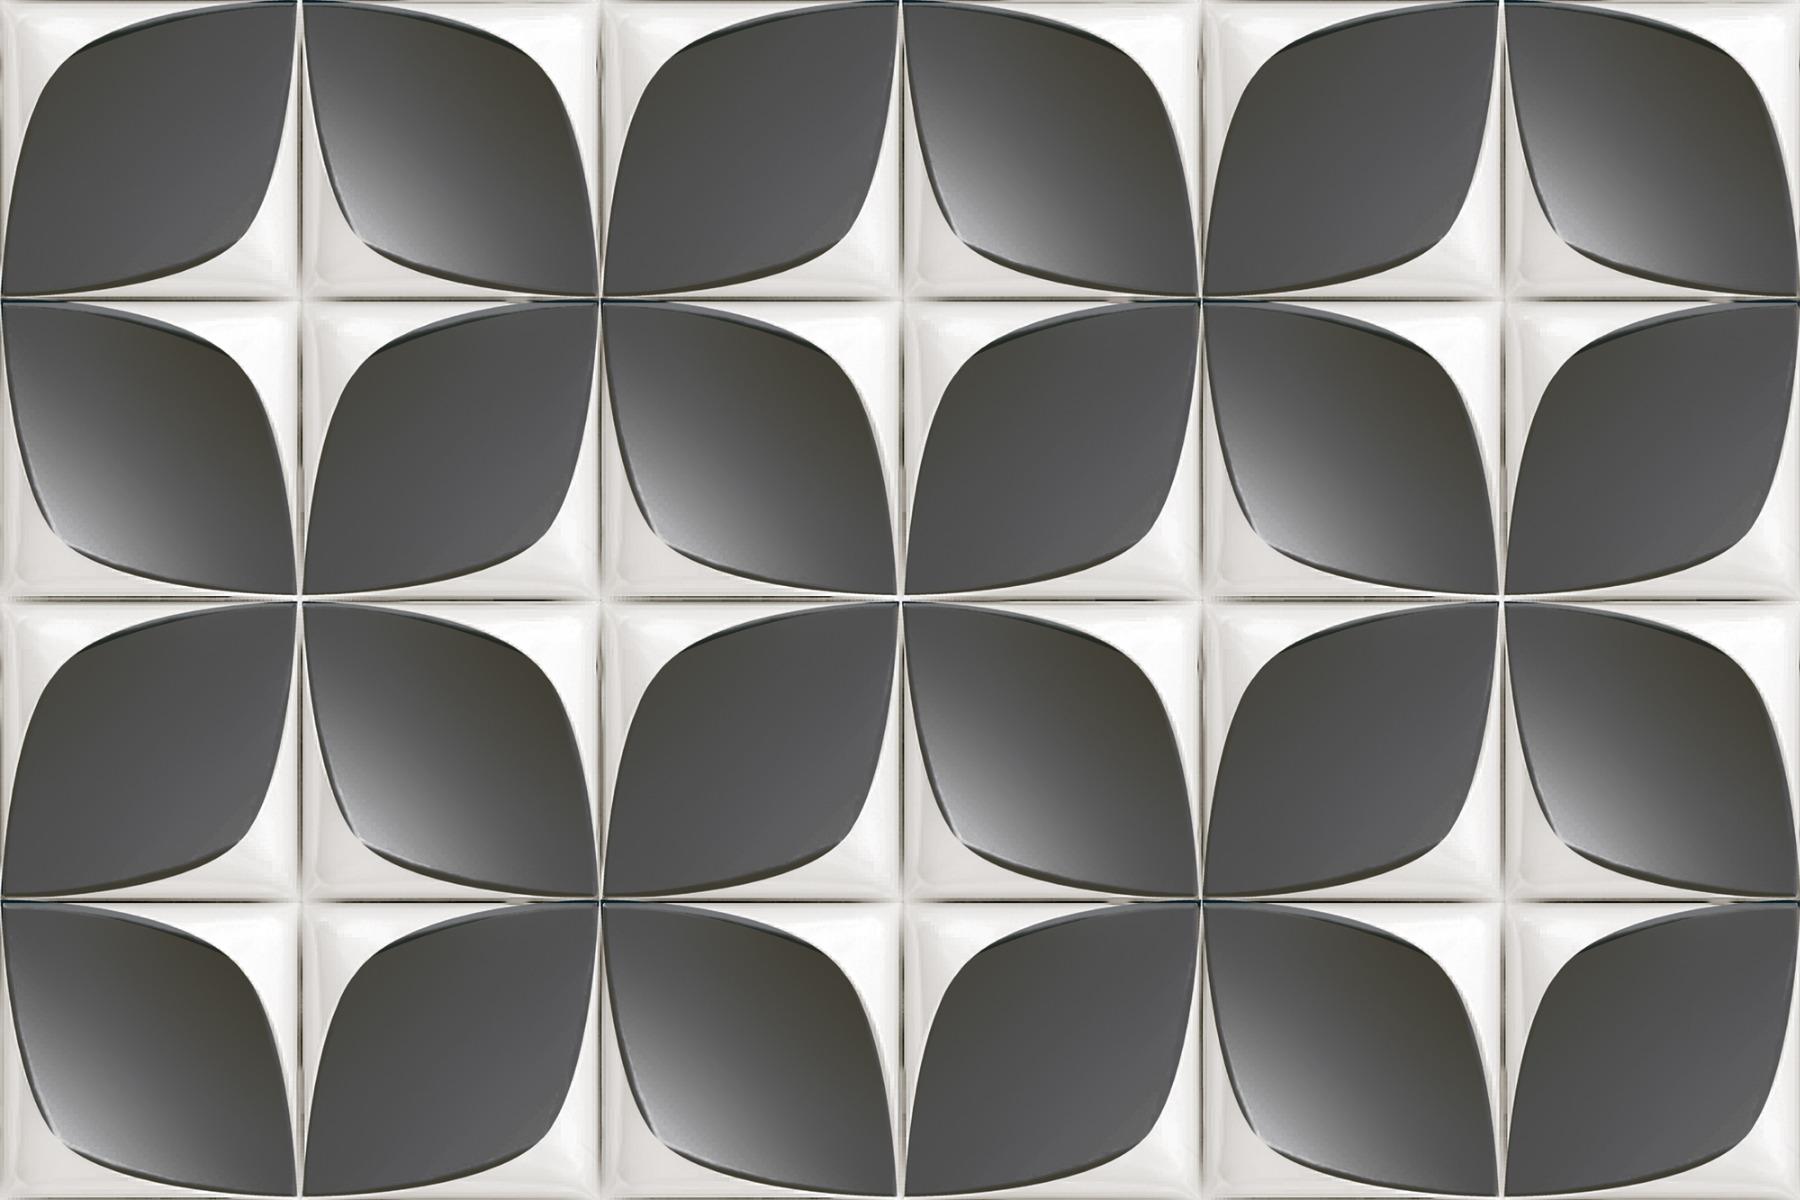 Vitrified Tiles for Bathroom Tiles, Kitchen Tiles, Balcony Tiles